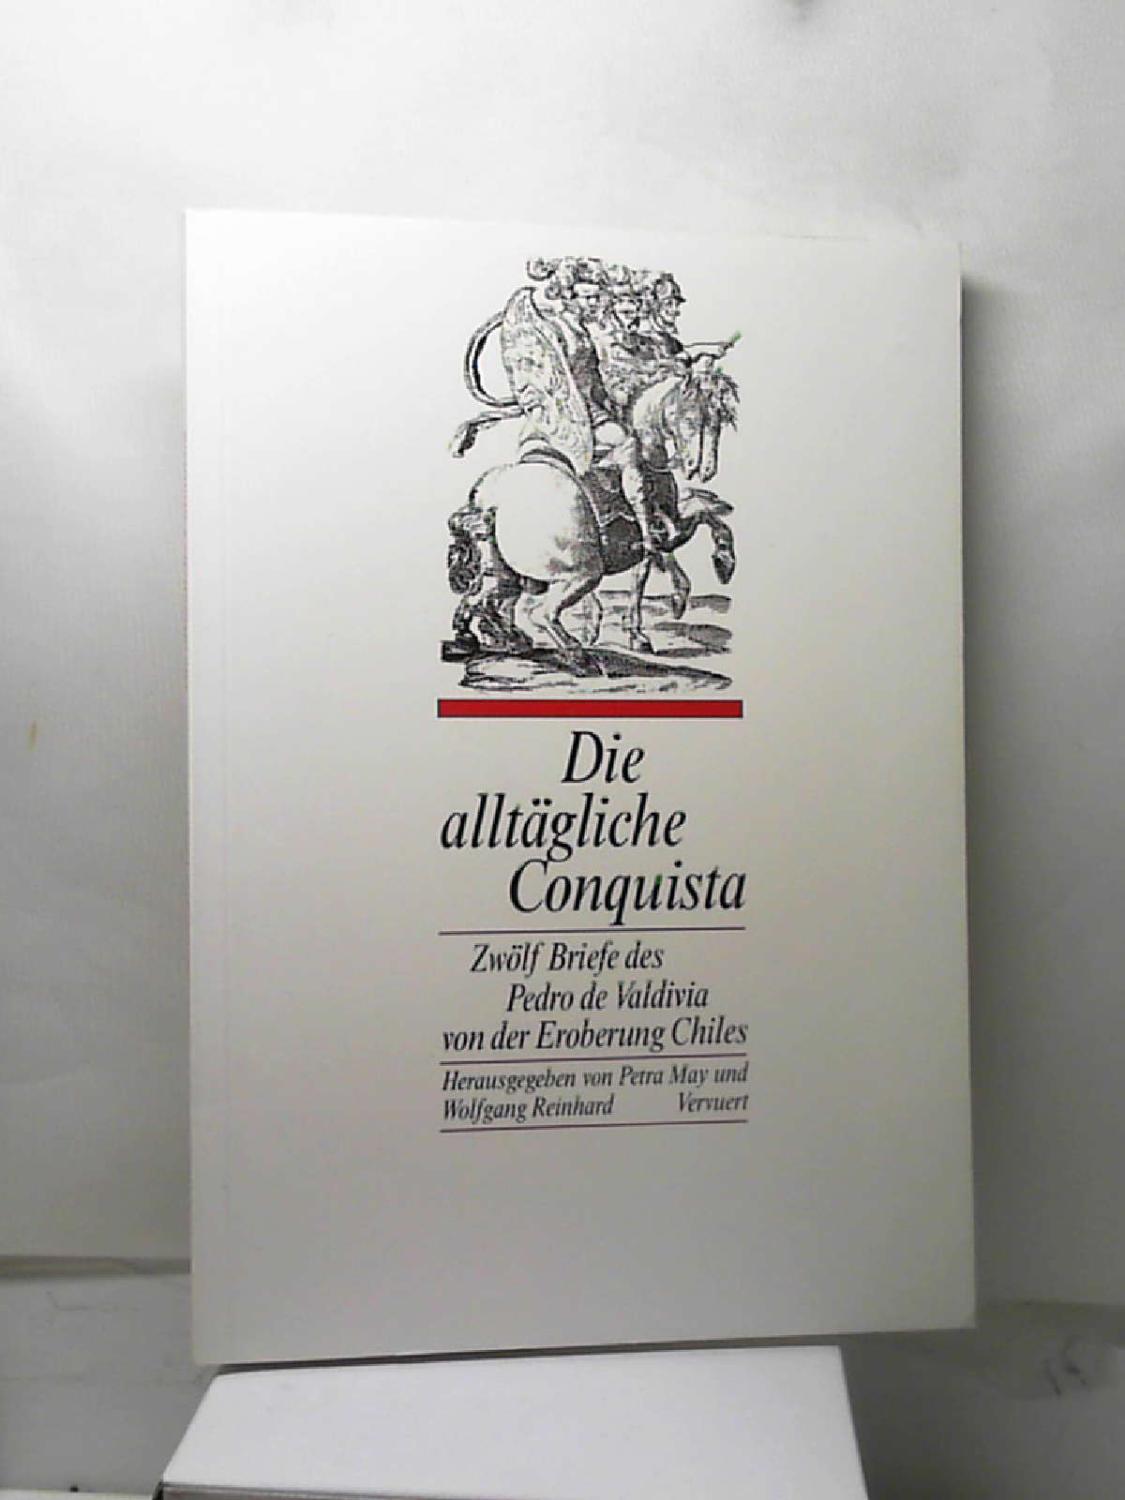 Die alltagliche Conquista. Zwolf Briefe des Pedro de Valdivia von der Eroberung Chiles 1545-1552 (German Edition)